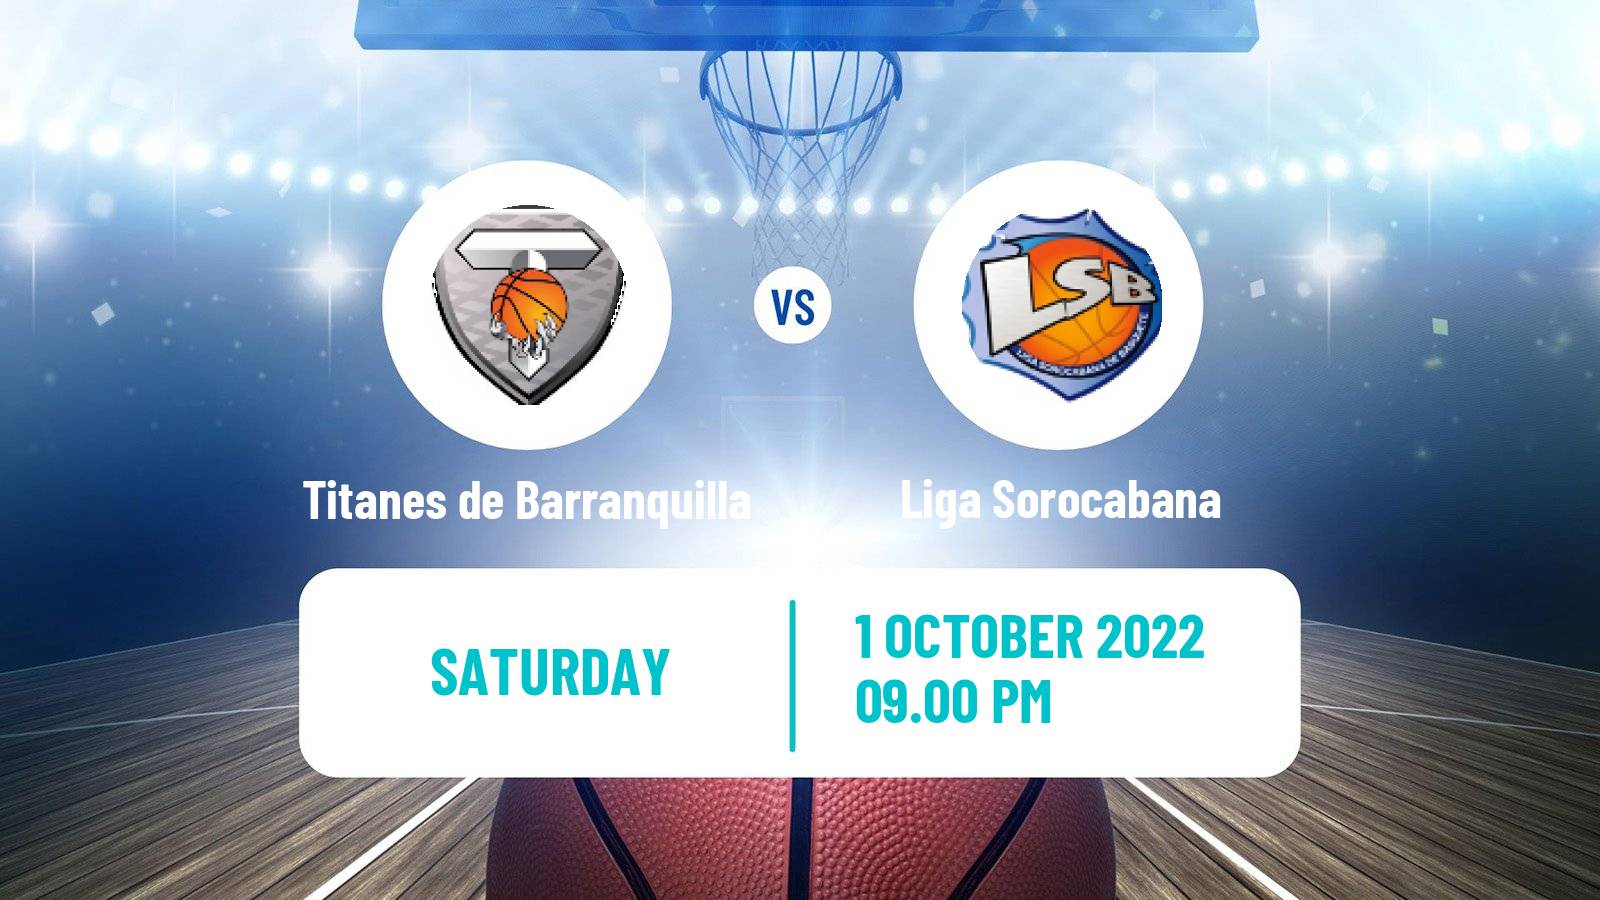 Basketball Basketball South American League Titanes de Barranquilla - Liga Sorocabana